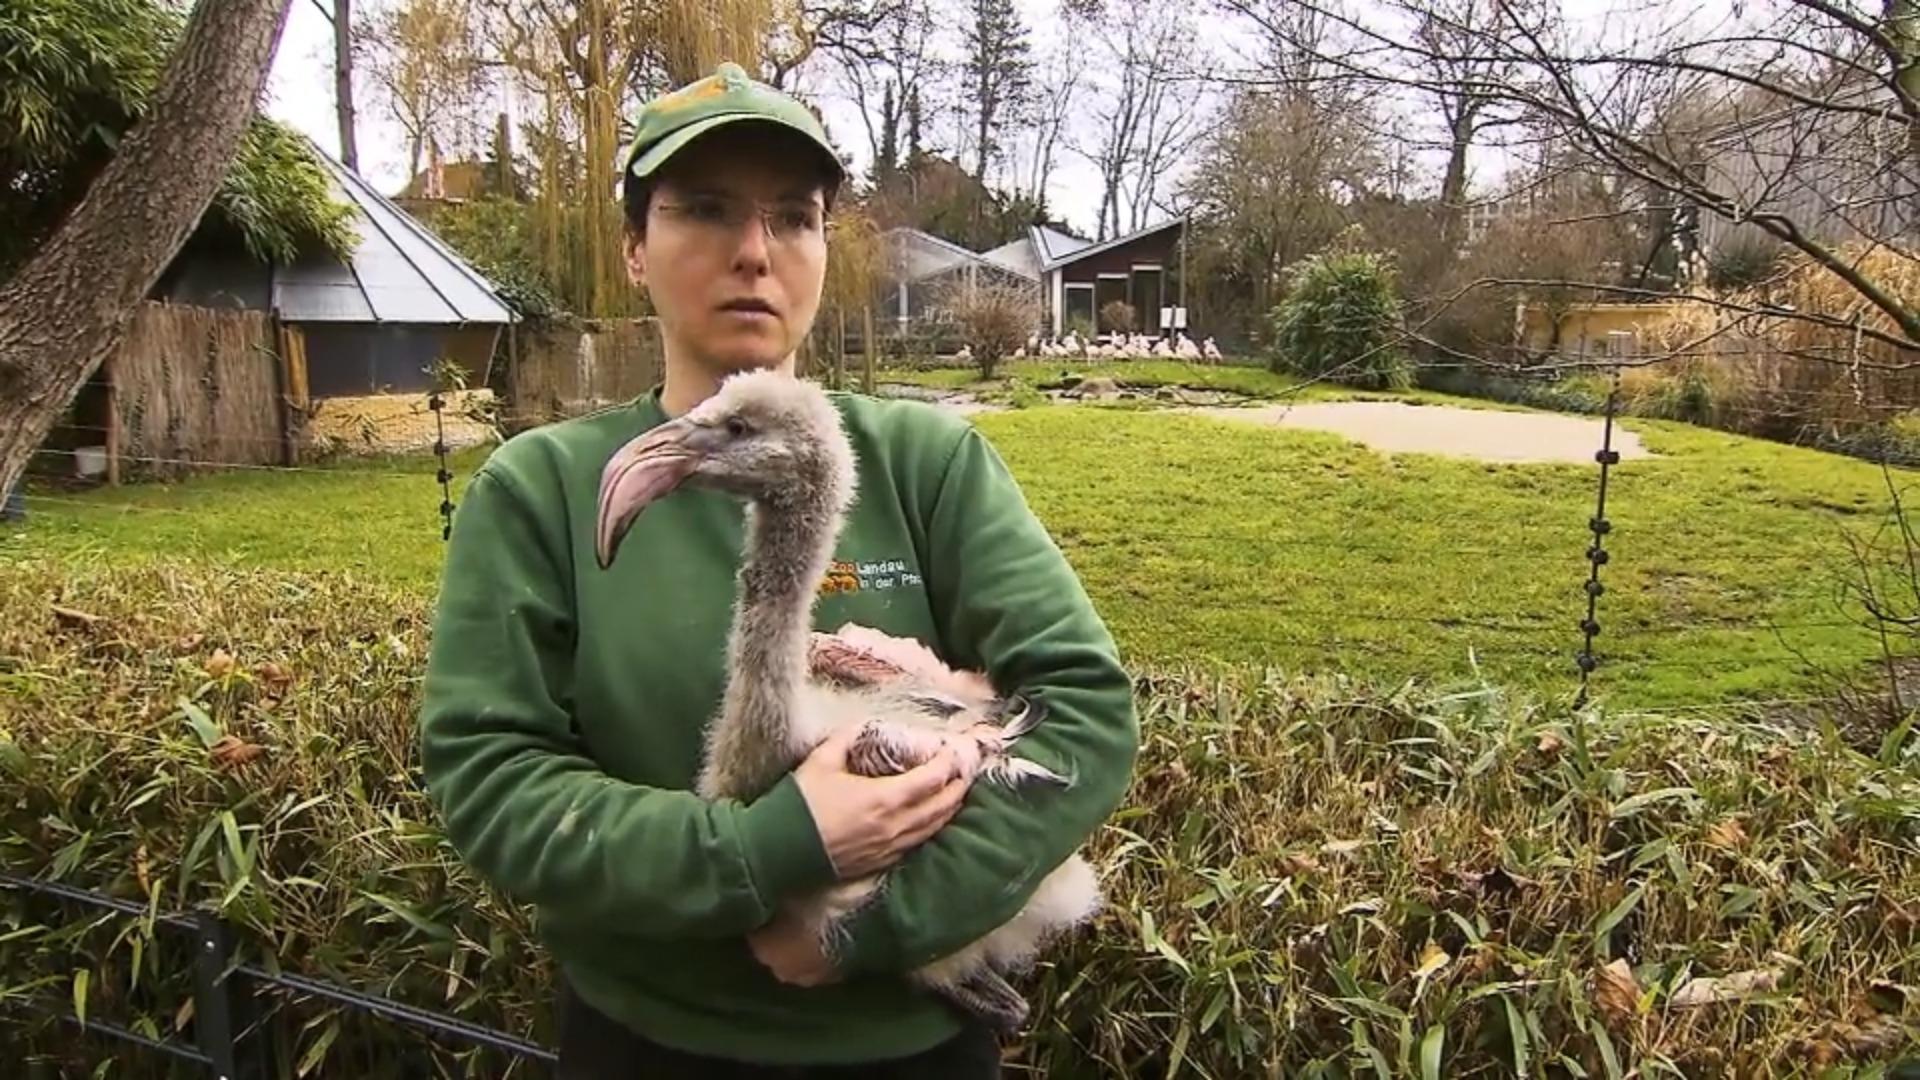 Pflegerin Doreen rettete Küken Filou das Leben Flamingo-Fehde im Zoo!